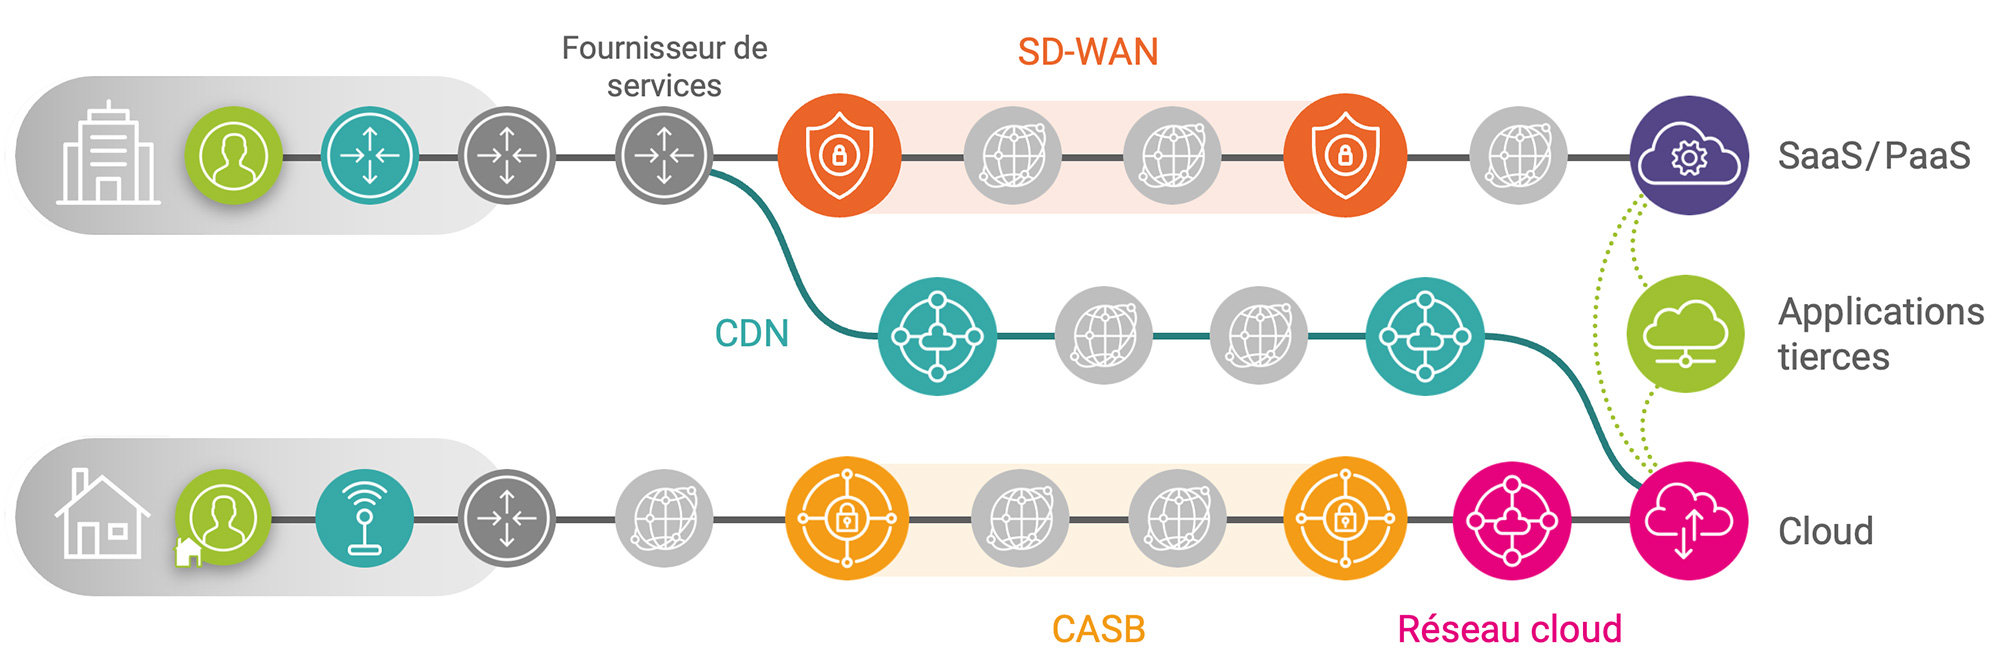 Chaîne de livraison d'applications SaaS et Cloud sur CASB, FAI, réseau hybride, SD WAN